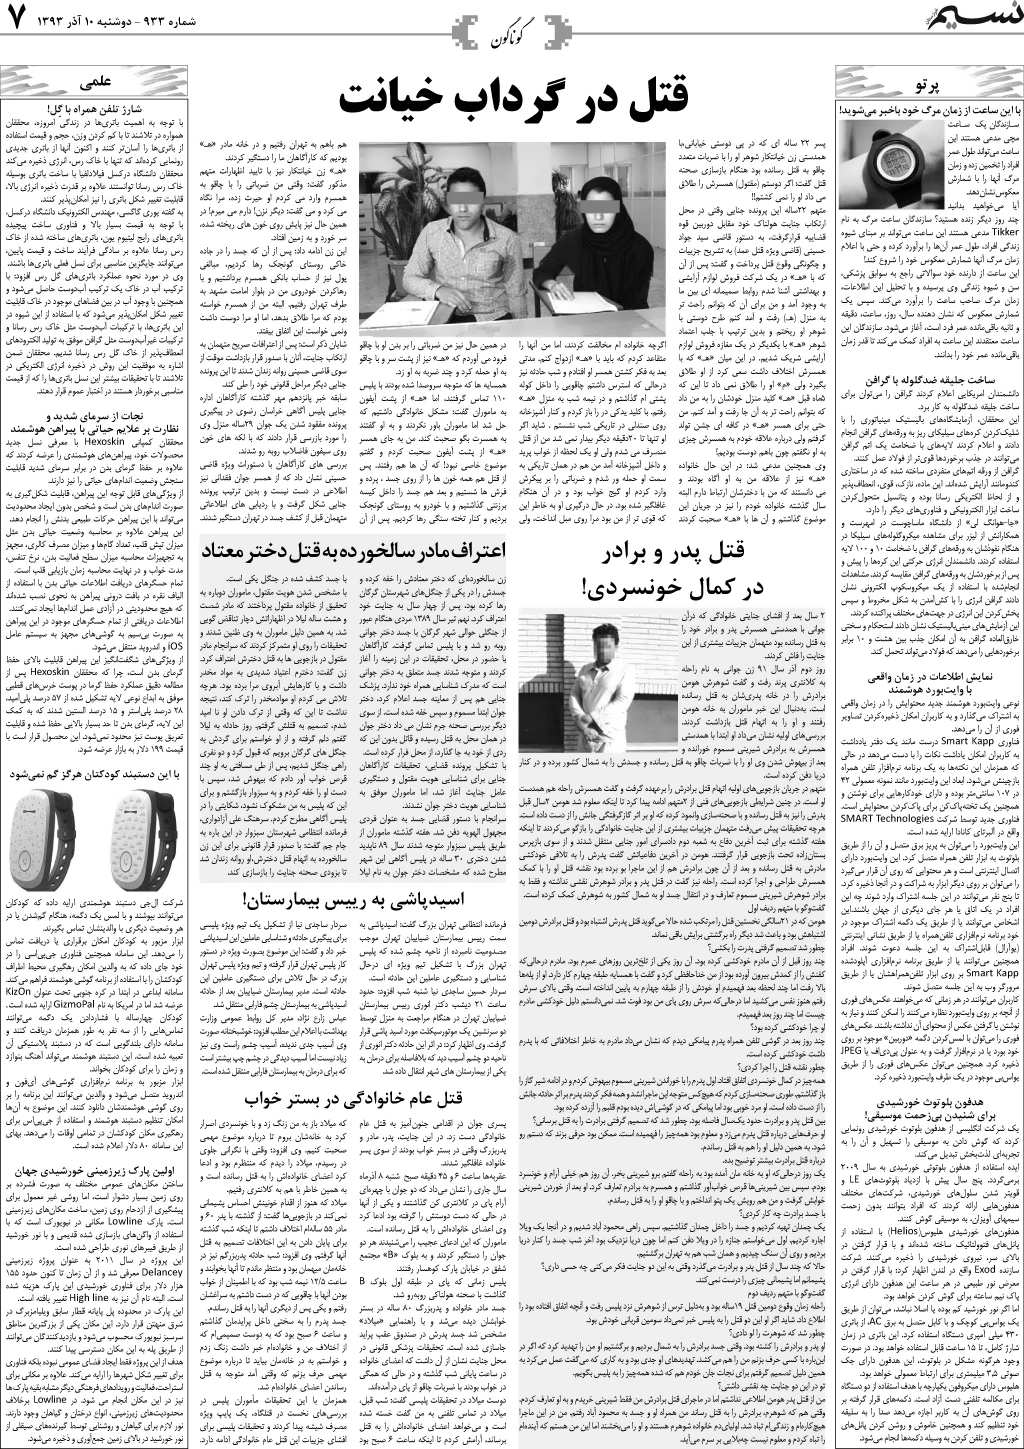 صفحه فرهنگ و هنر روزنامه نسیم شماره 933